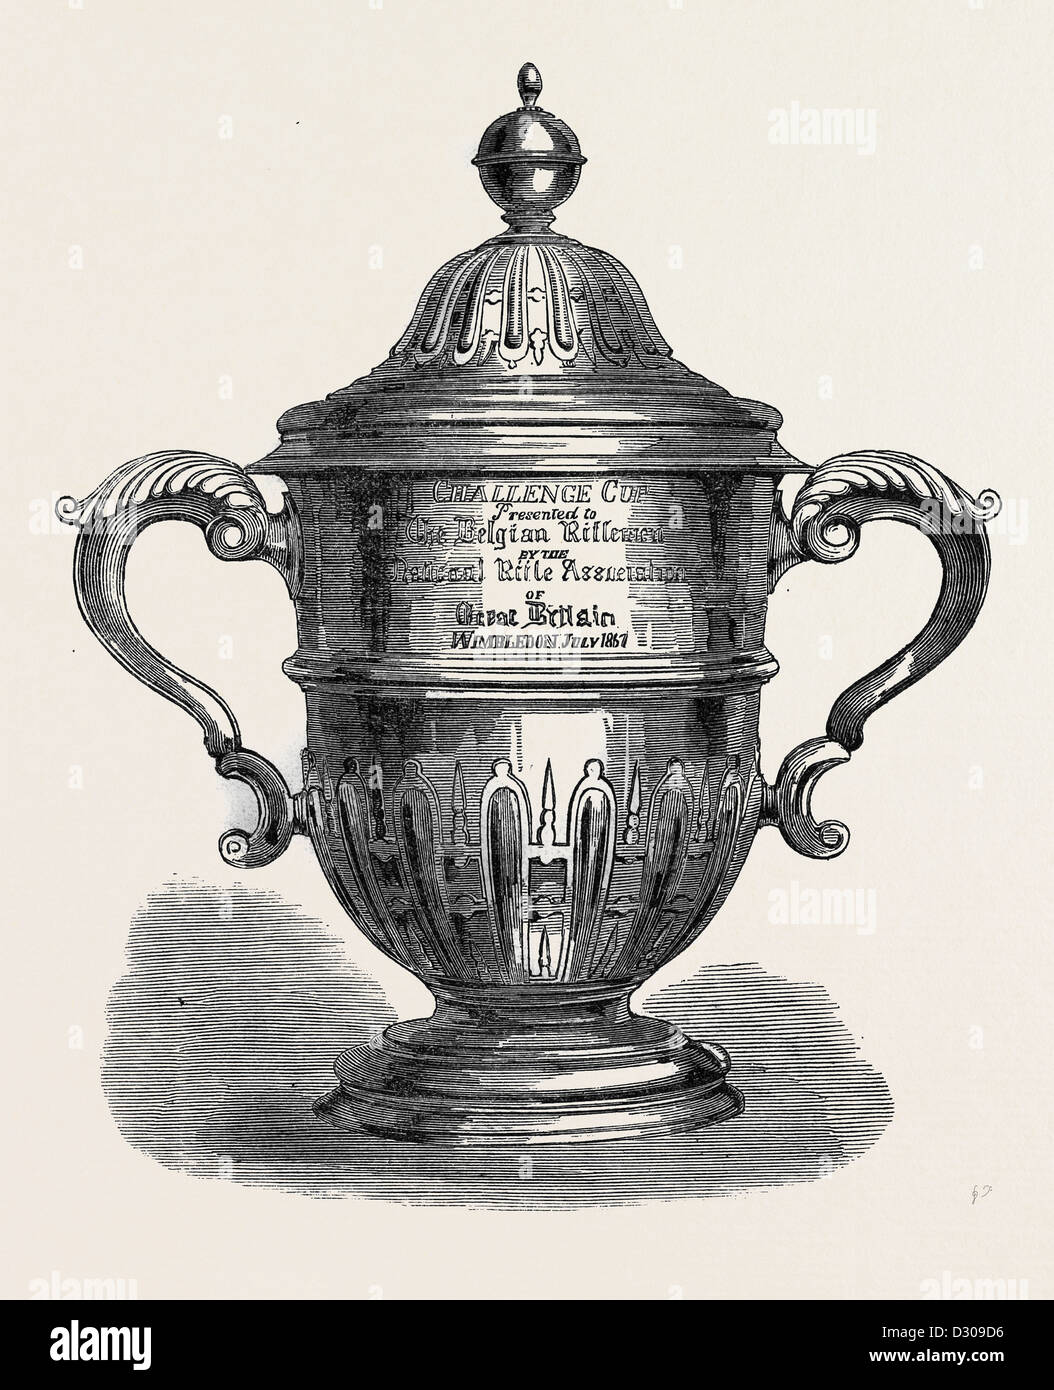 CHALLENGE-CUP DIE BELGISCHEN SCHÜTZEN VON DER NATIONALRIFLE-VEREIN 1867 VORGESTELLT Stockfoto